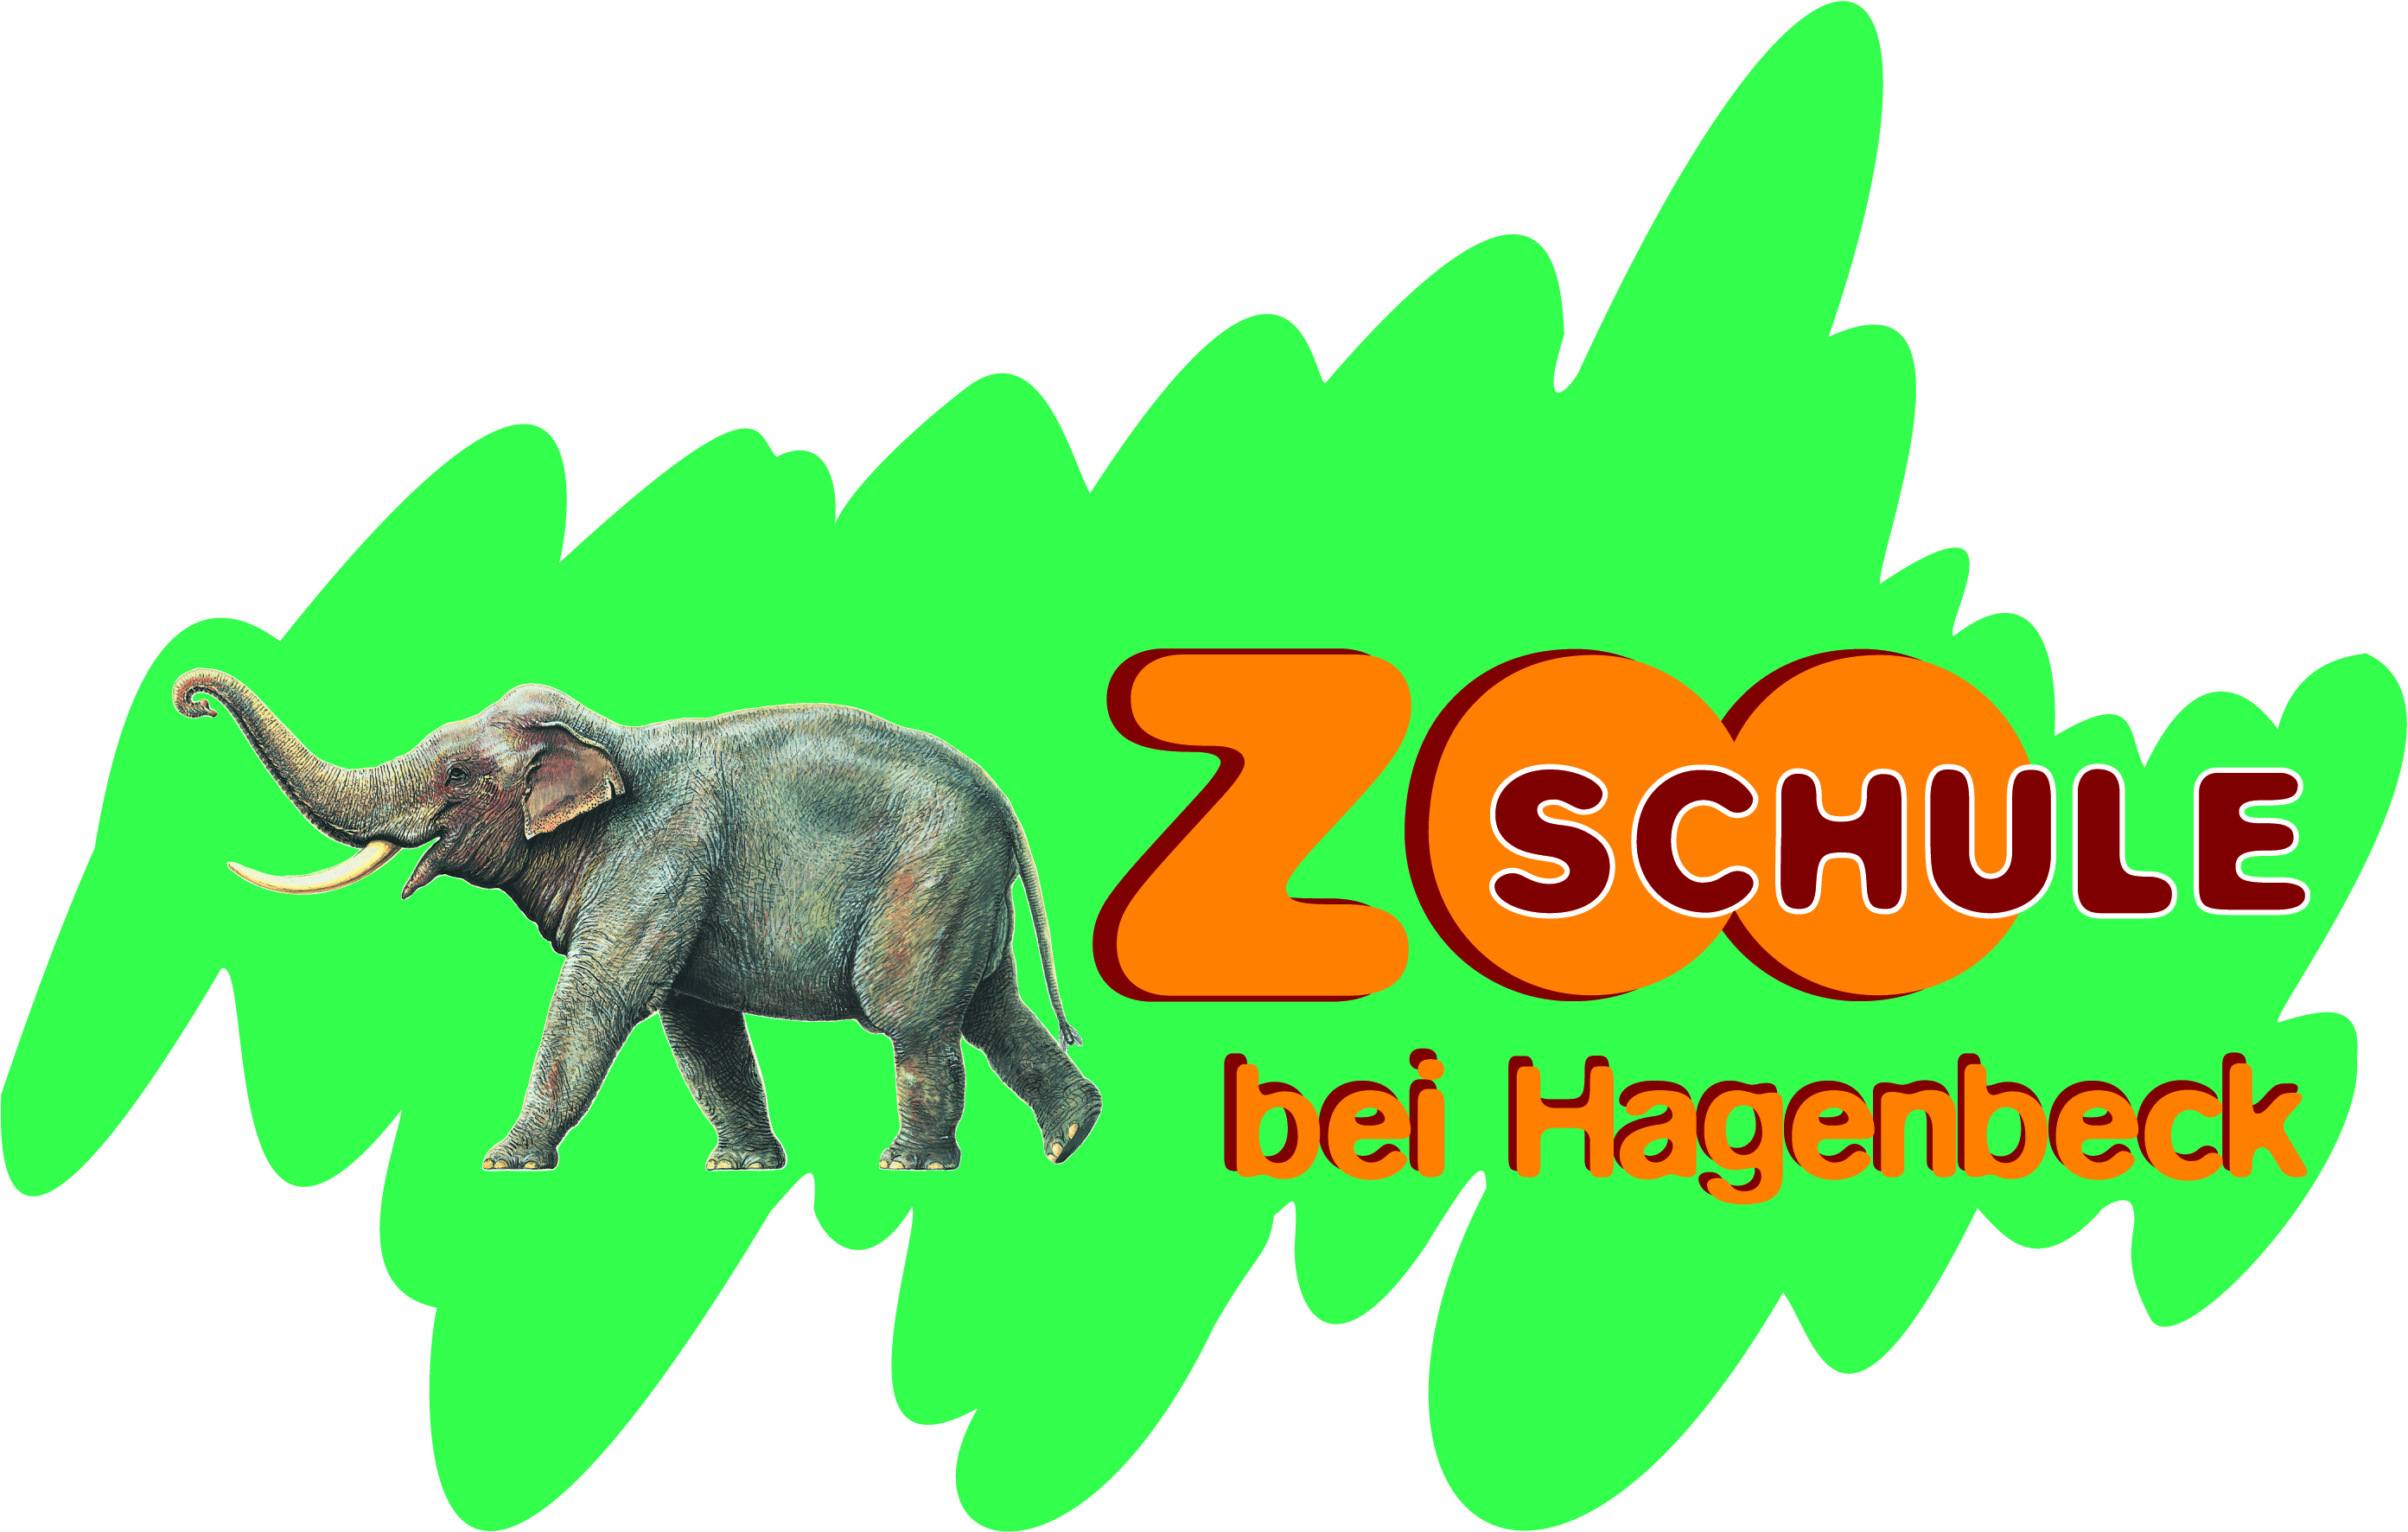 Evolution und Genetik abiturrelevant und anschaulich im Tierpark Hagenbeck